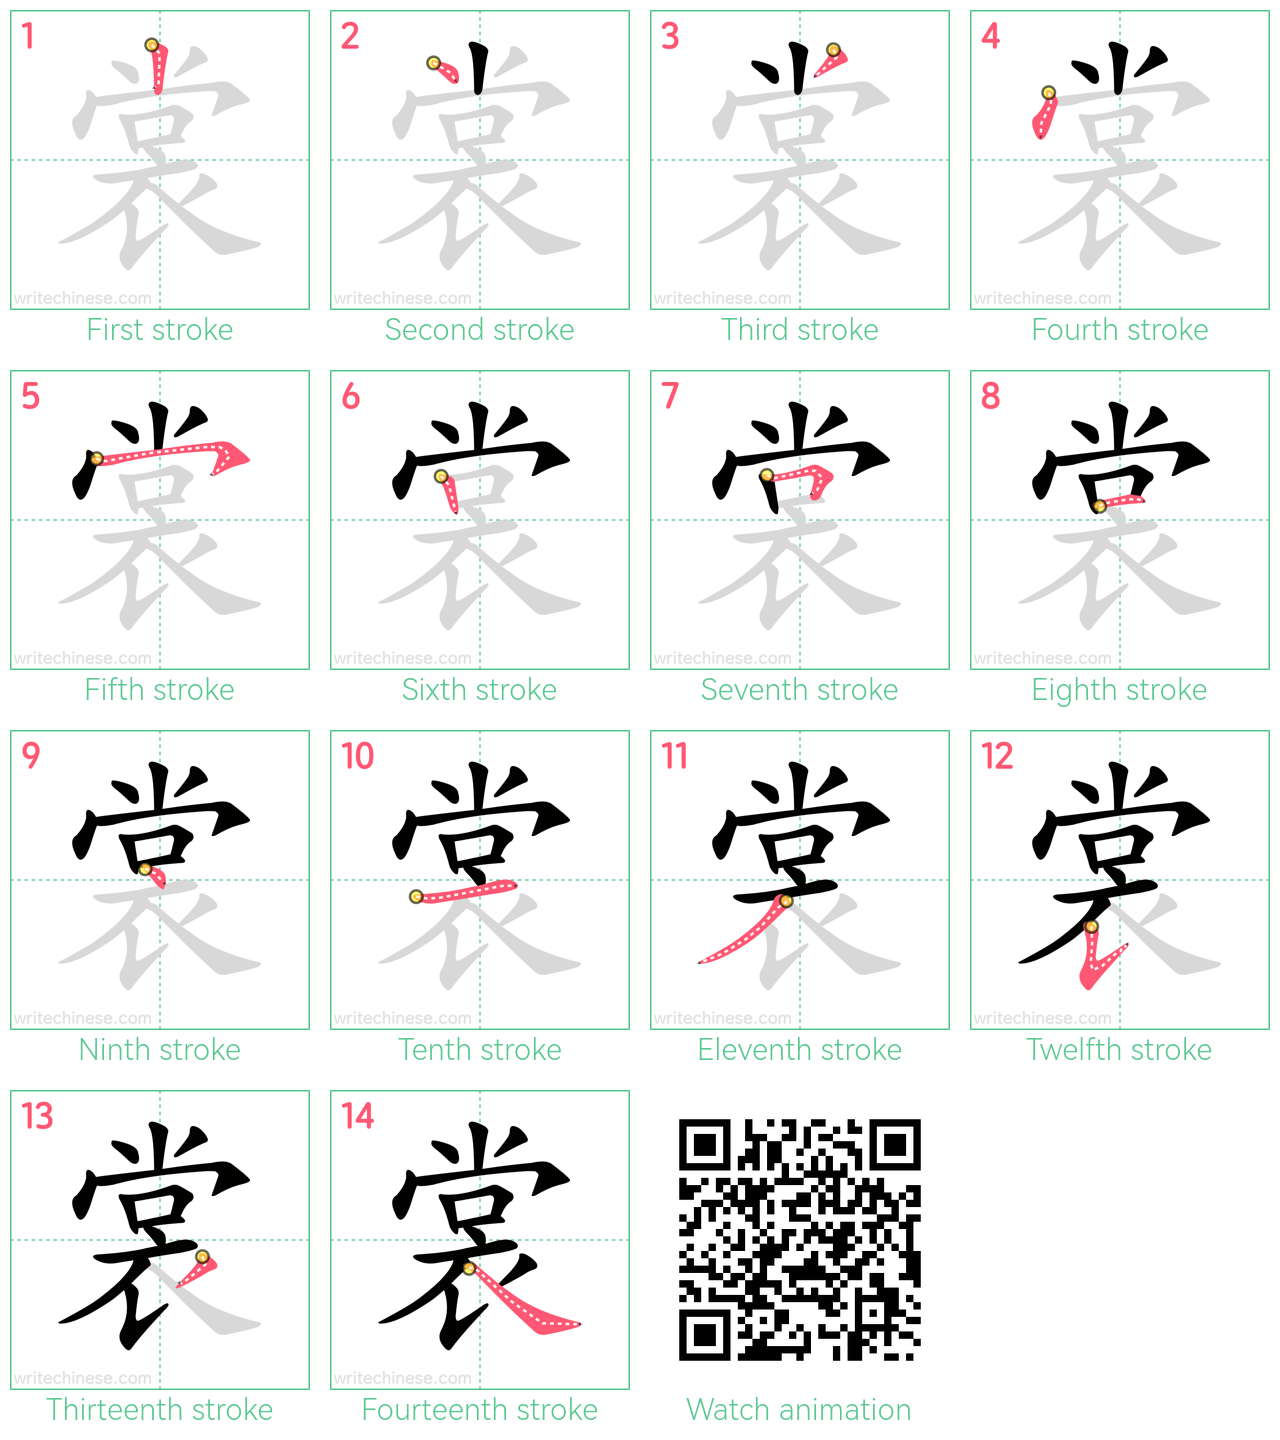 裳 step-by-step stroke order diagrams